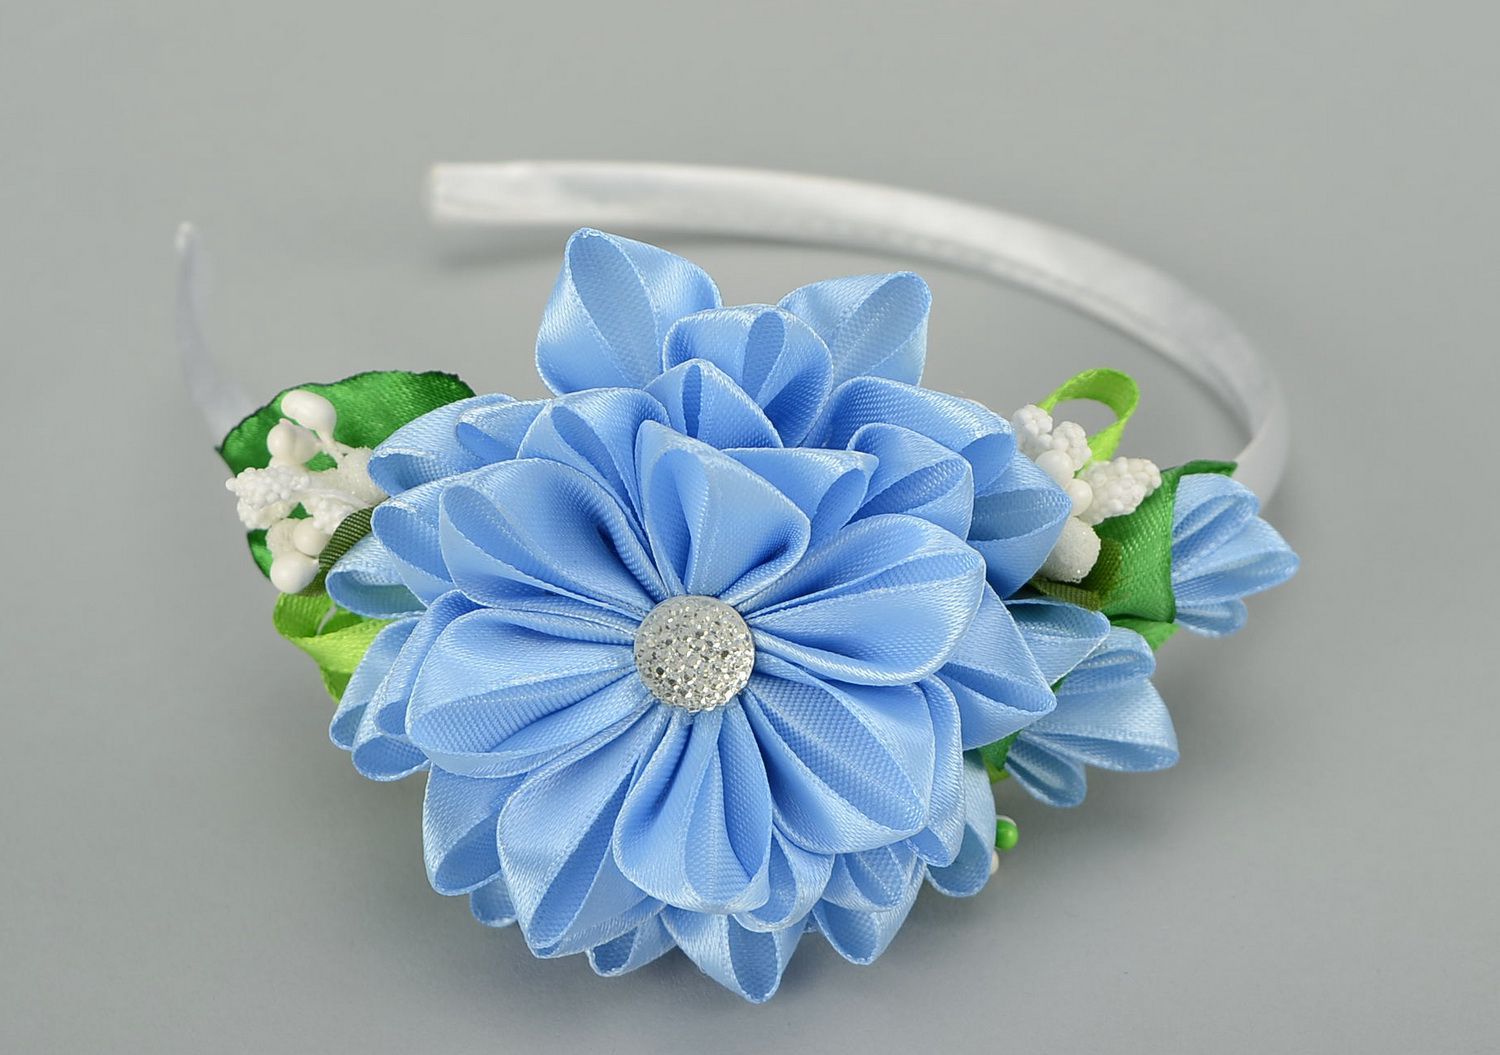 Обруч, венок на голову с голубым атласным цветком фото 1